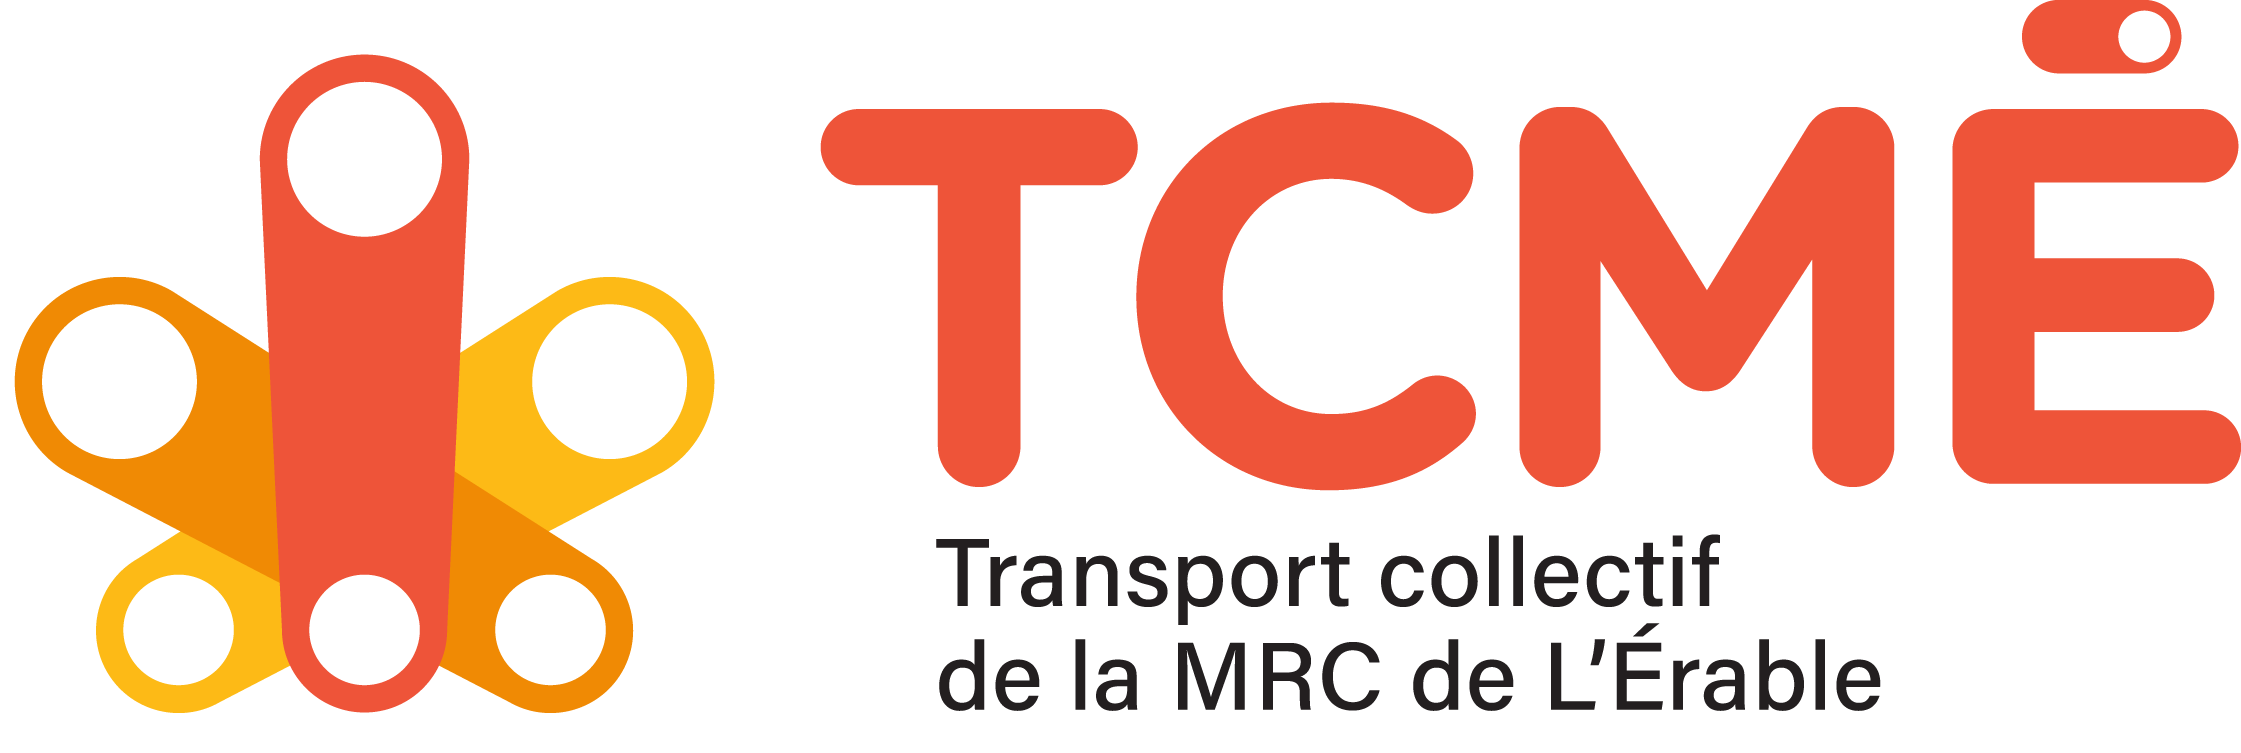 Transport collectif et adapté de la MRC de l'Érable